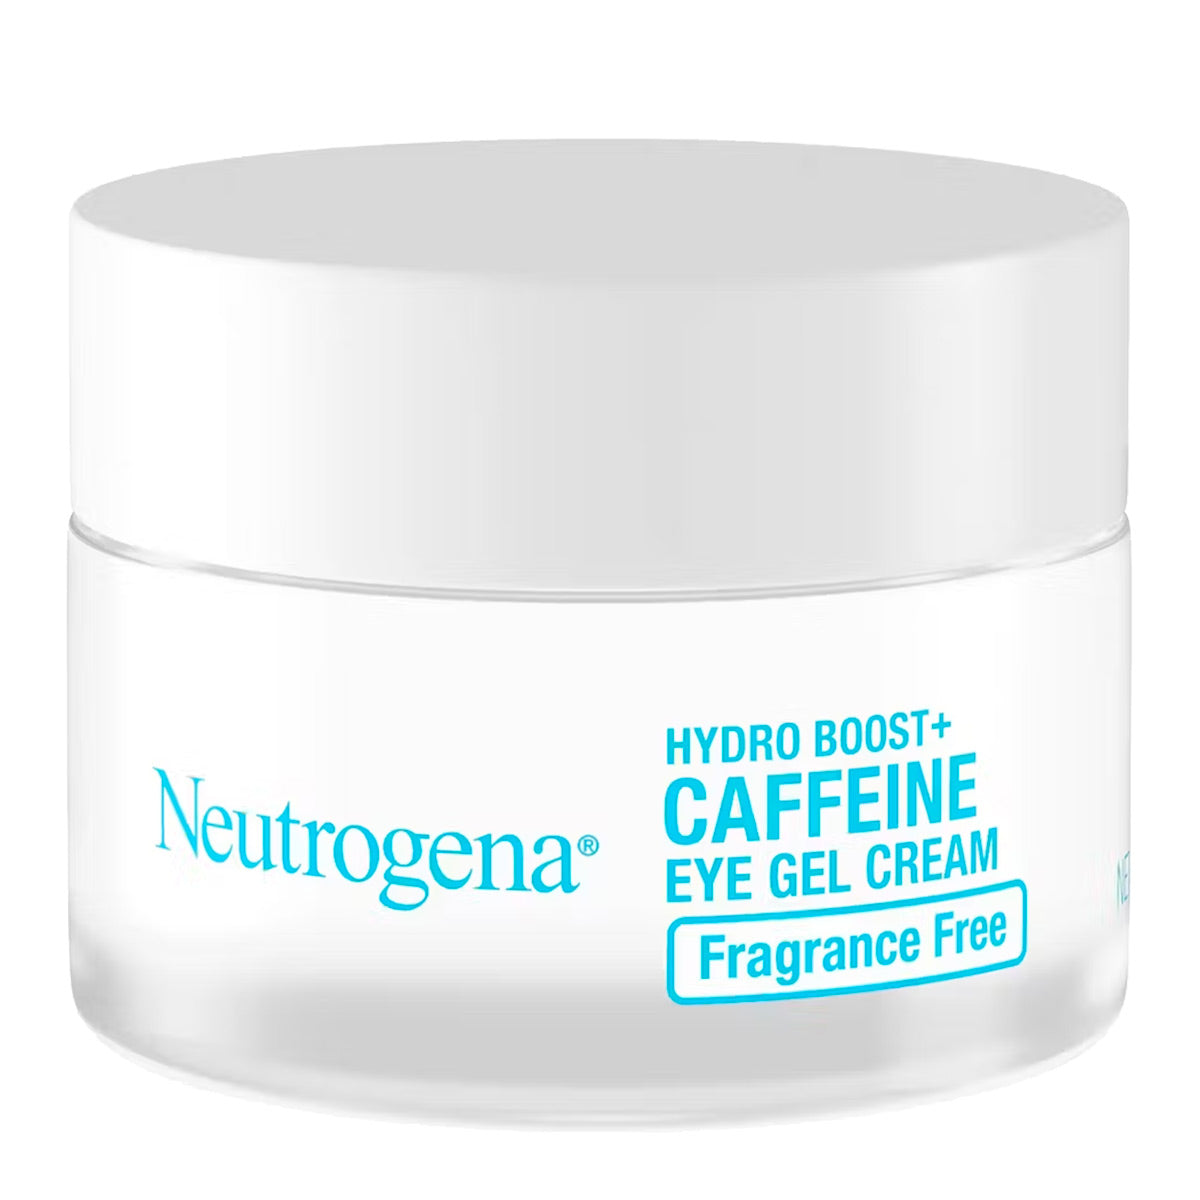 Neutrogena Hydro Boost + Caffeine Eye Gel Cream 14 g